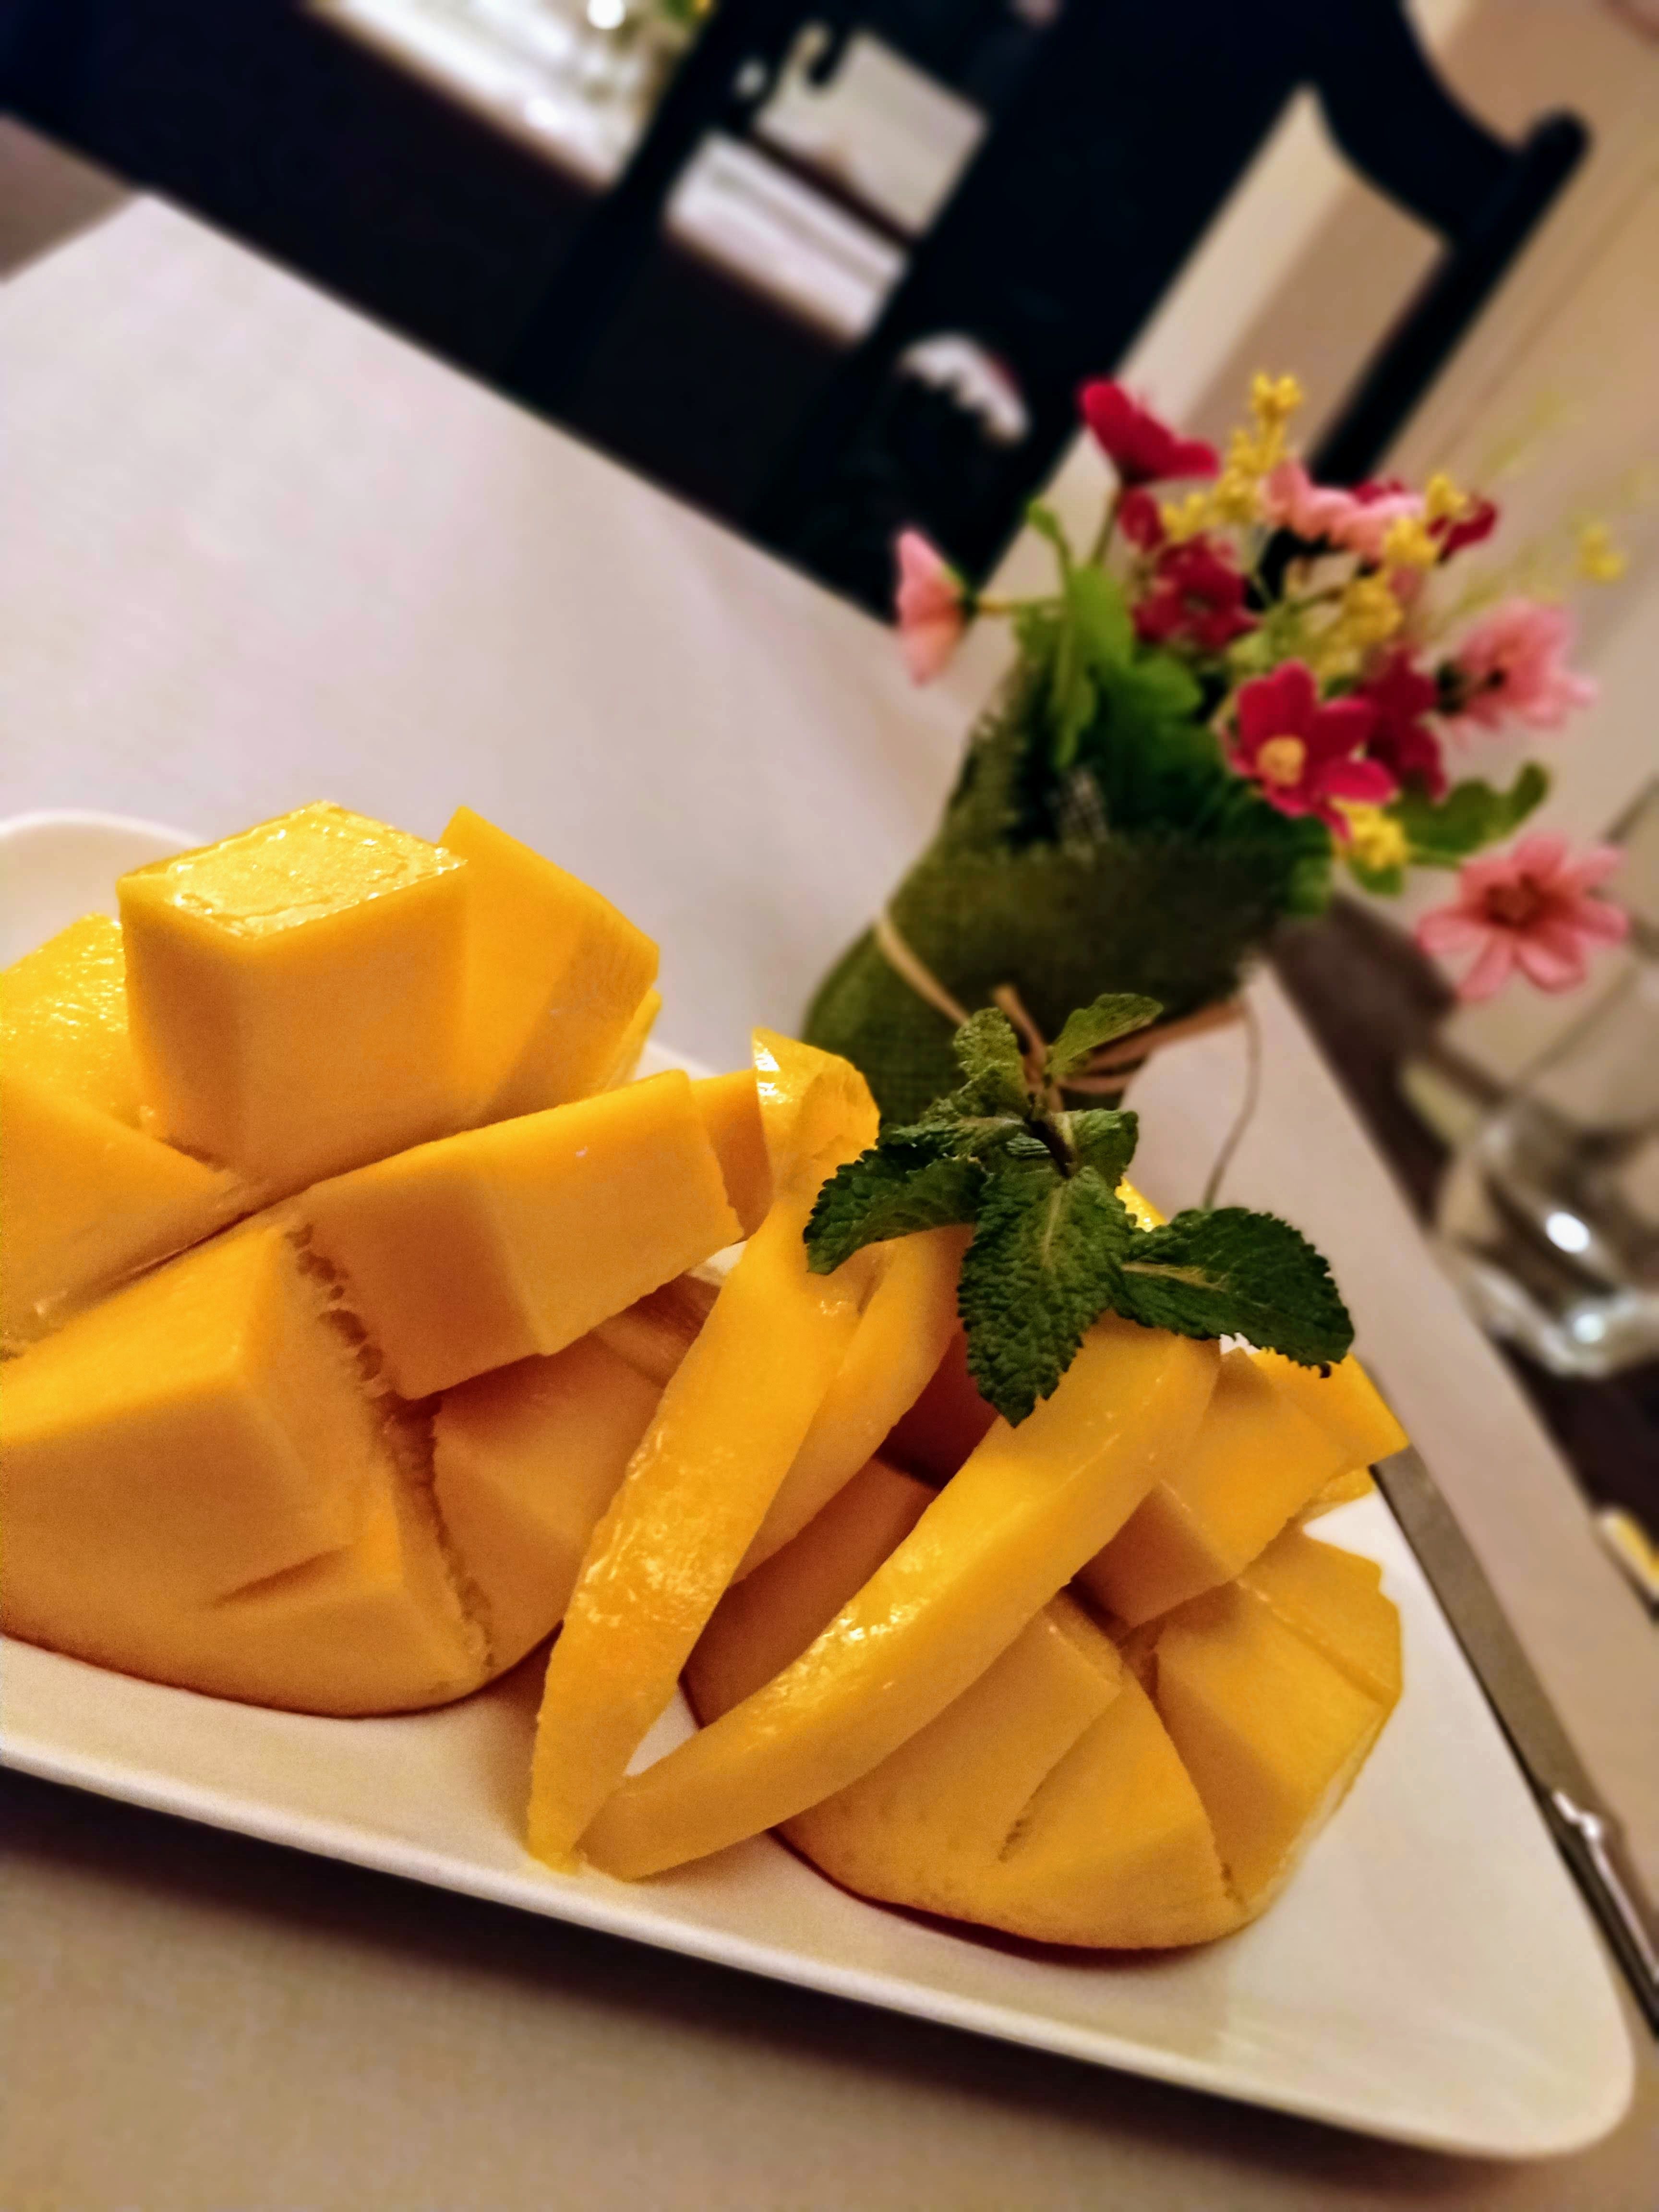 Mango ready to taste